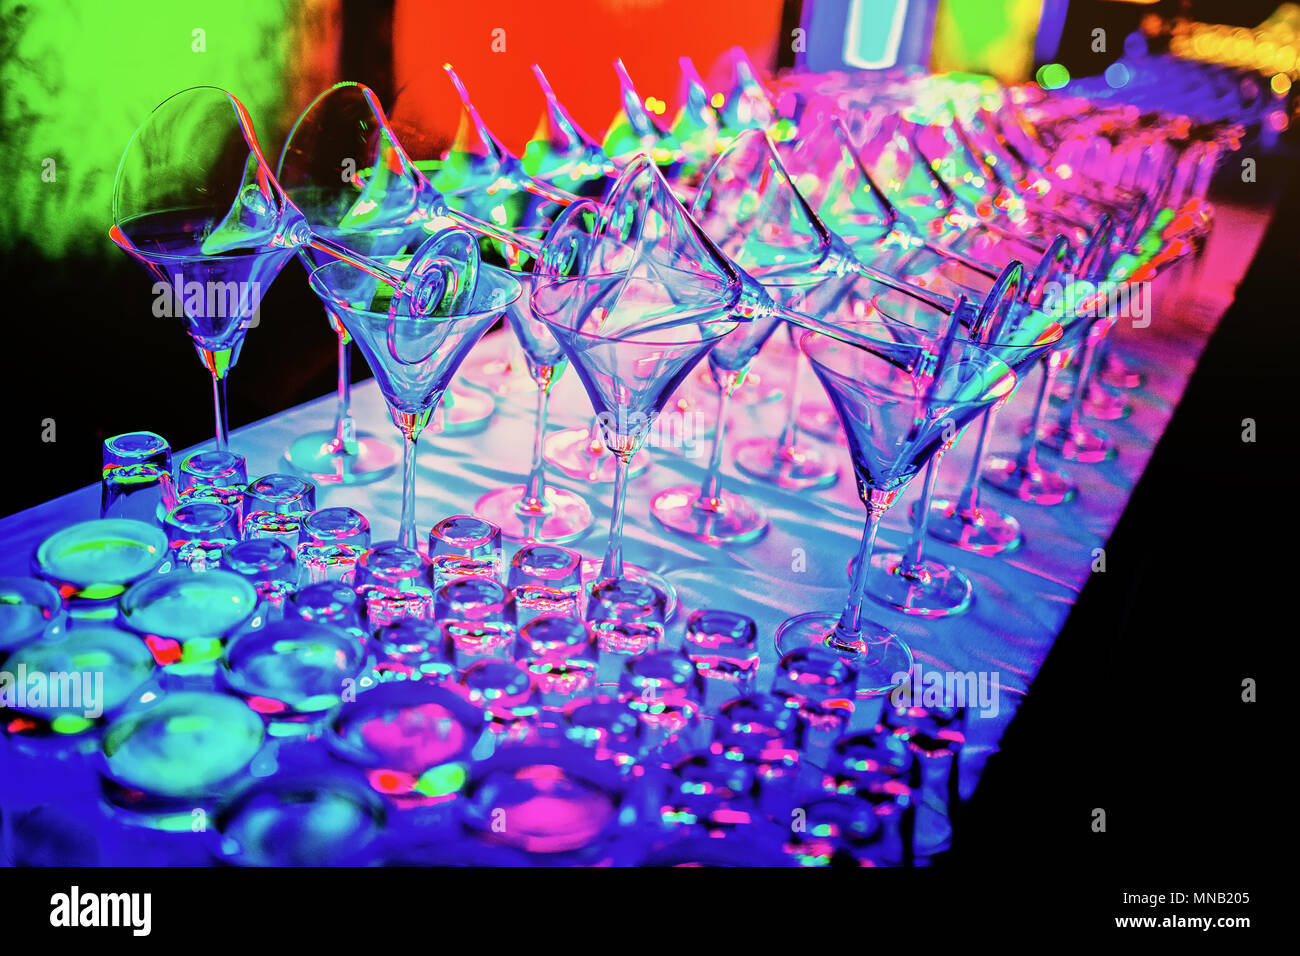 Ein Bündel leer Weingläser Line Up auf der Theke mit Multi-color  LED-Reflexion über die Gläser in der Diskothek party Stockfotografie - Alamy